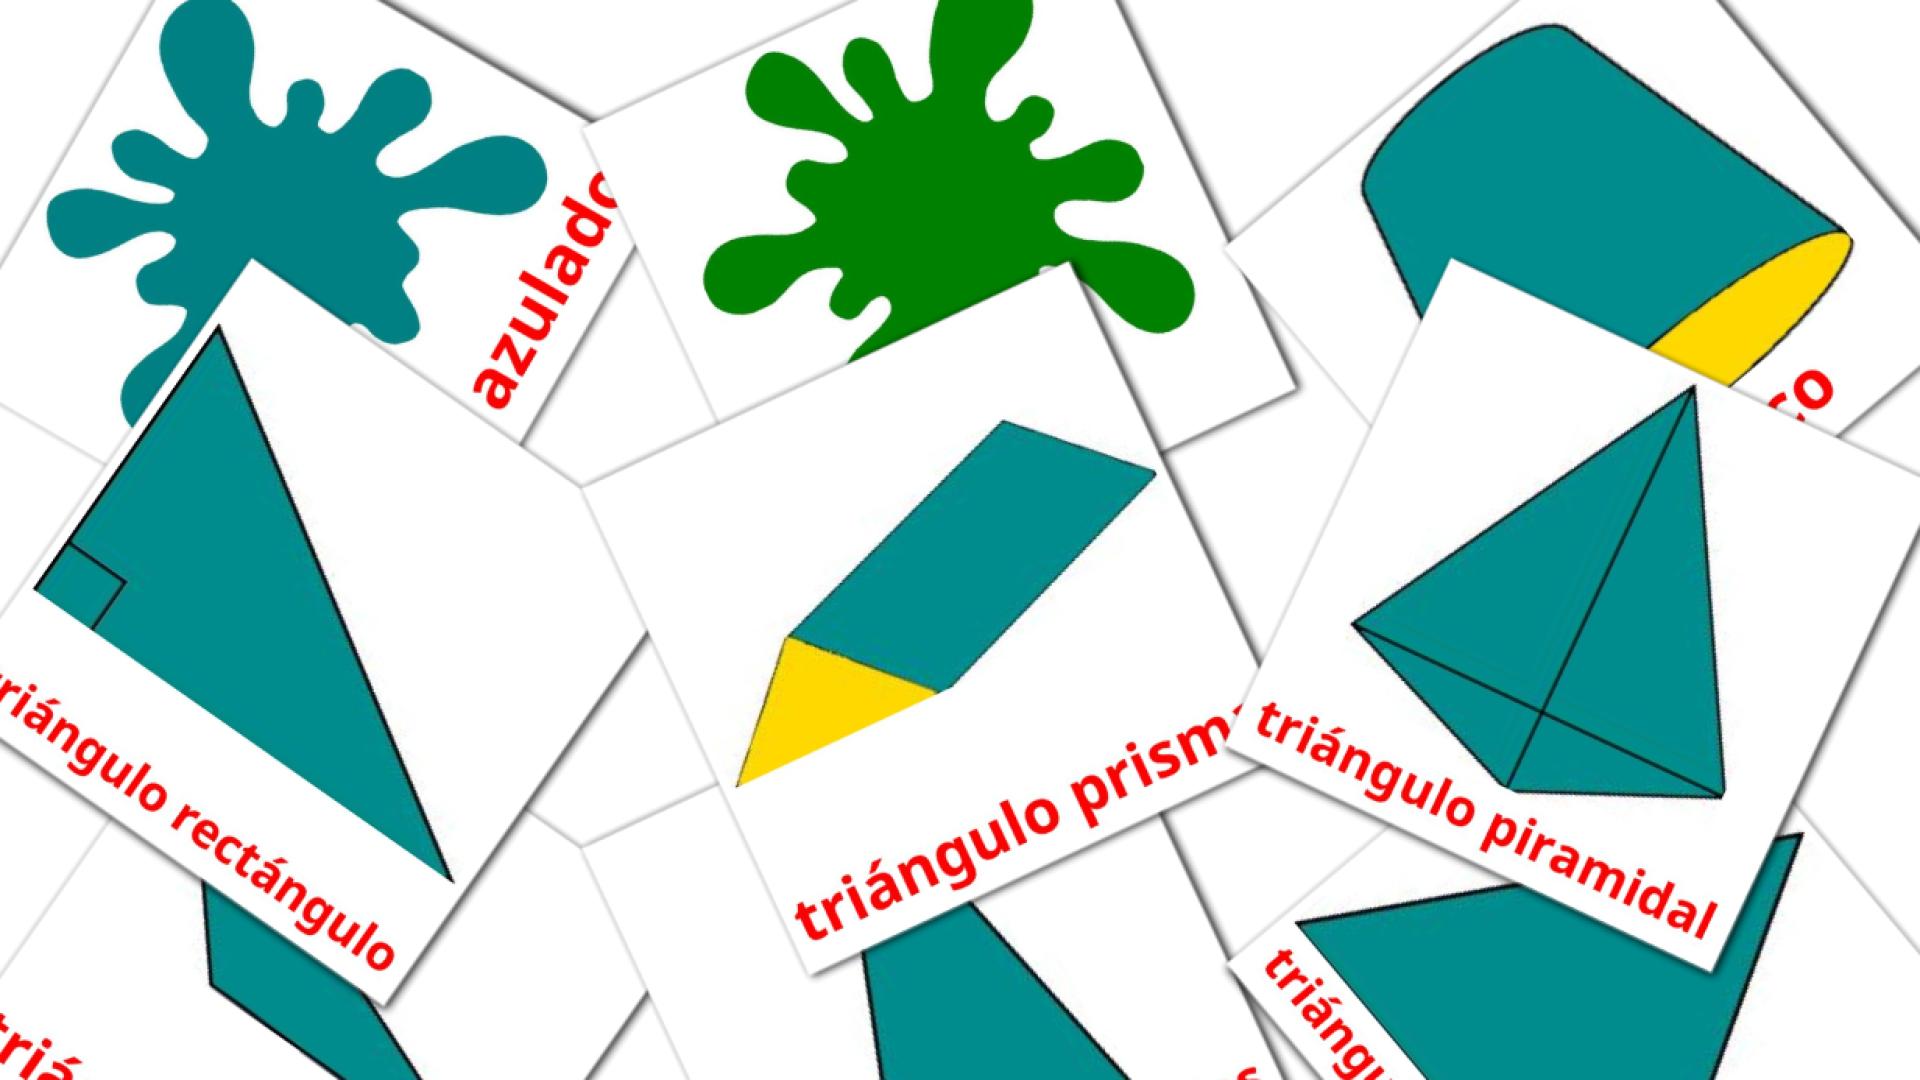 Colores y formas spanish vocabulary flashcards